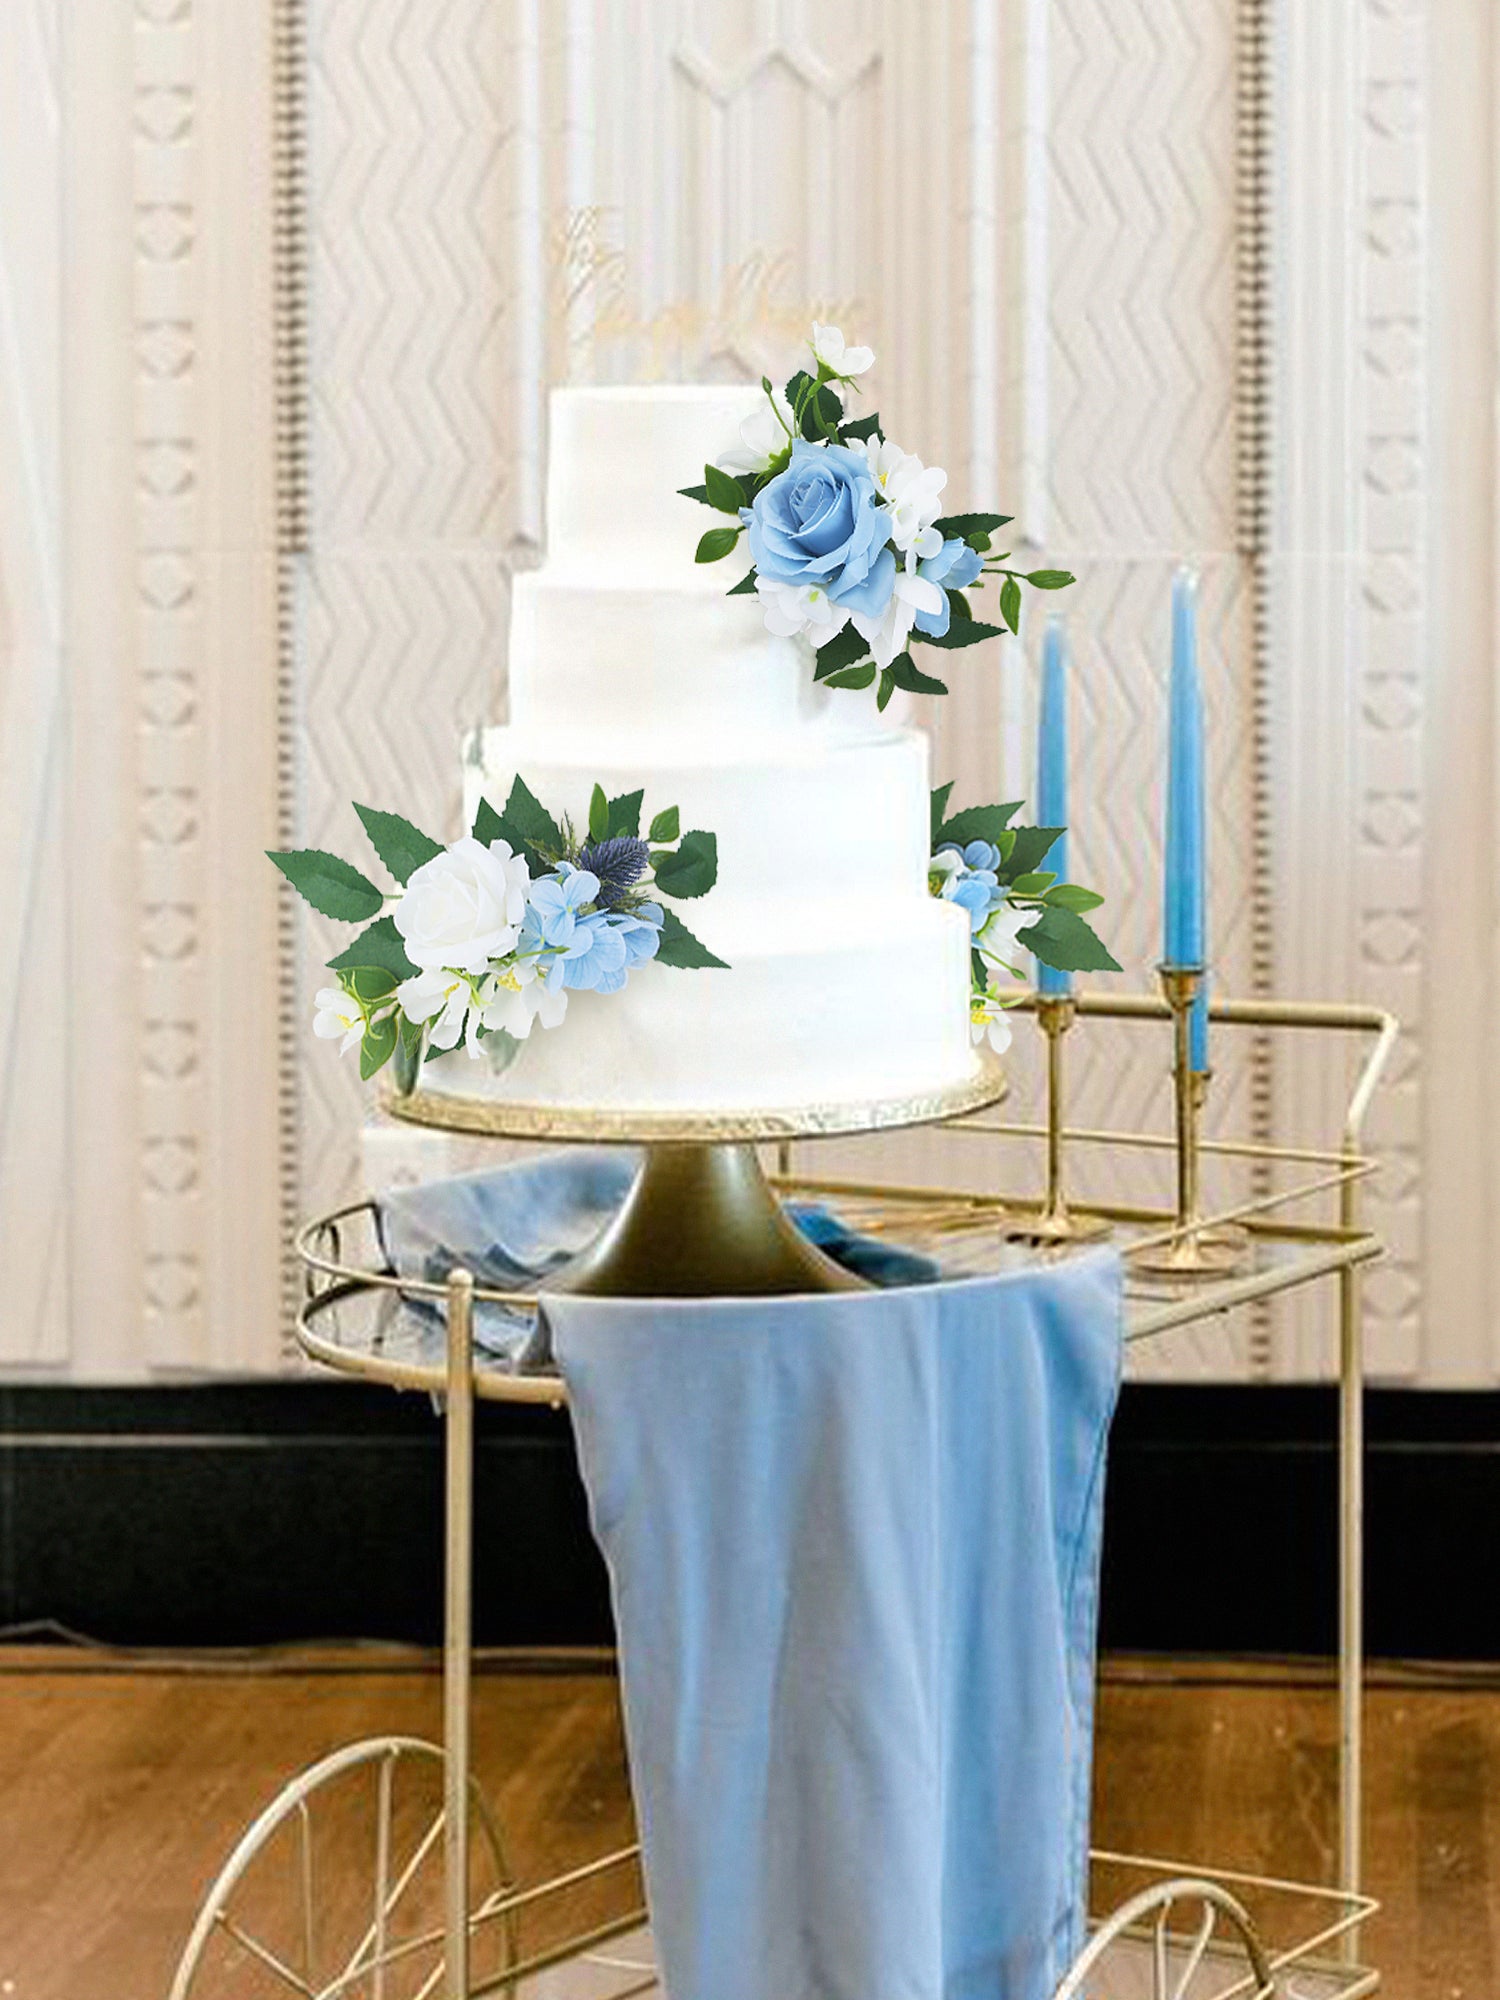 3Pcs White & Blue Cake Topper Flowers Set